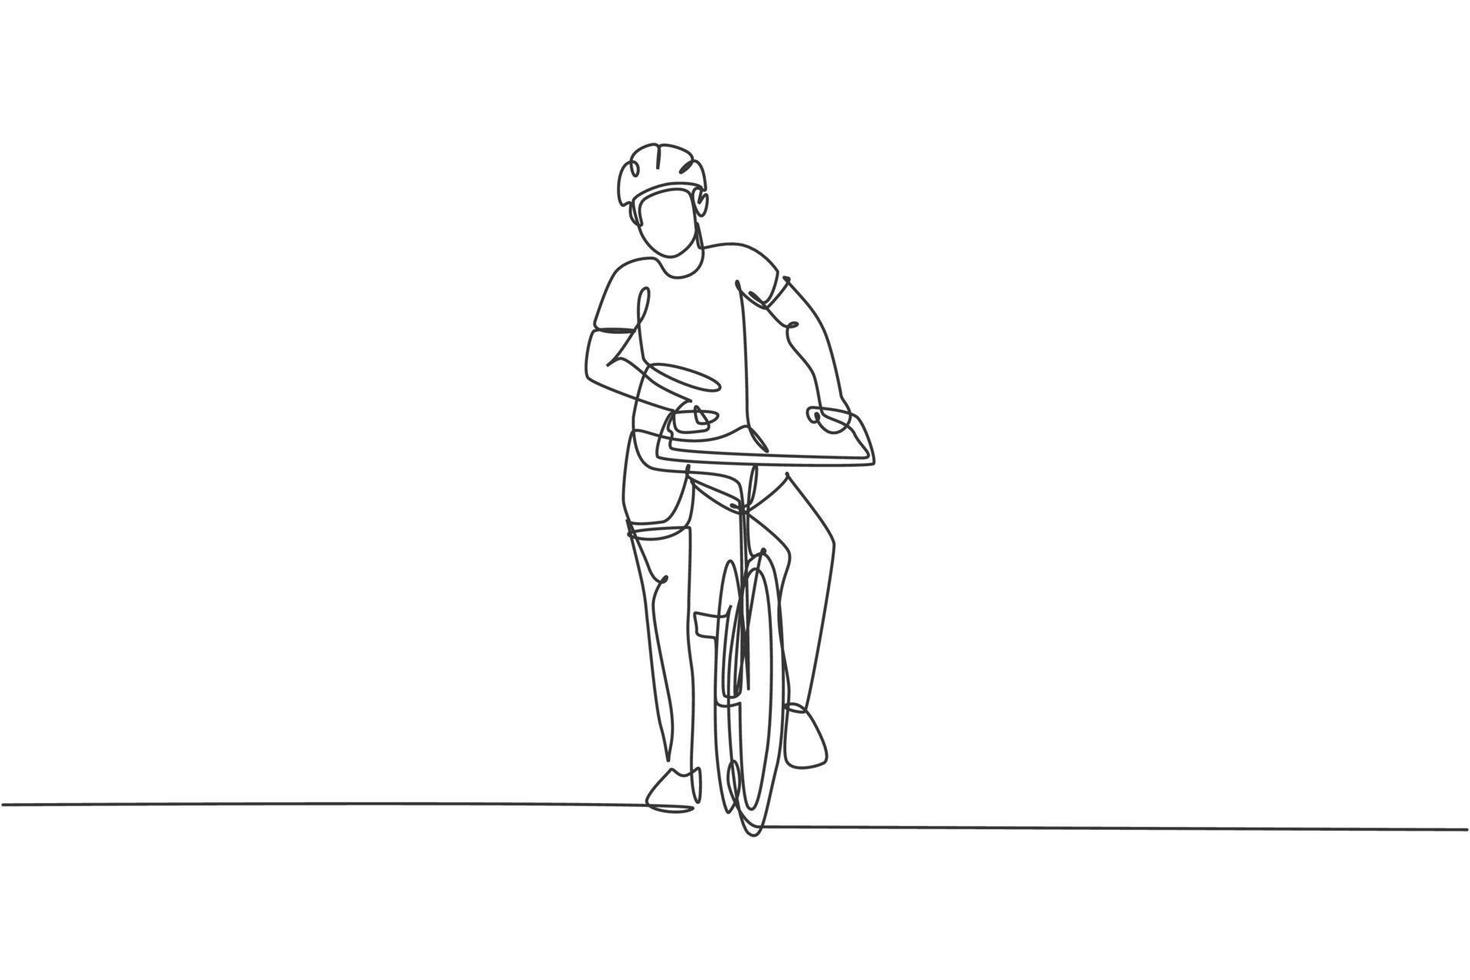 un unico disegno a linea continua di un giovane ciclista agile posa con sicurezza all'evento ciclistico. concetto di stile di vita sportivo. illustrazione vettoriale alla moda di una linea di disegno per i media di promozione delle gare ciclistiche